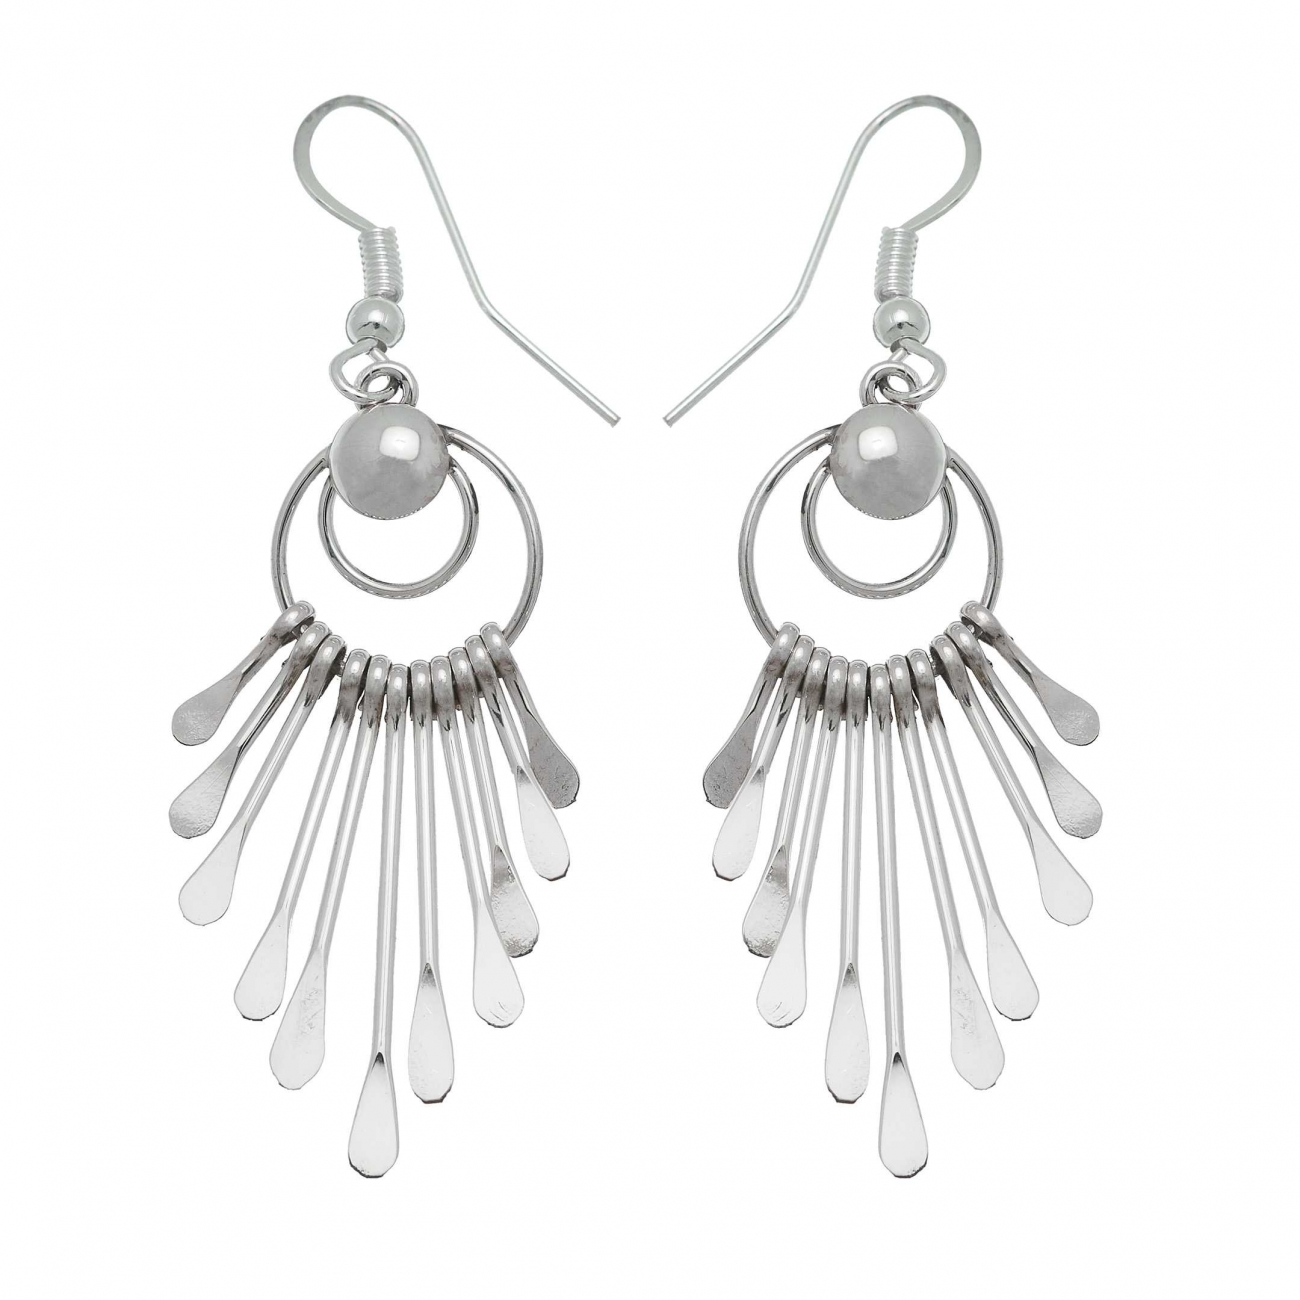 Harpo Paris classic earrings BOw24 in silver